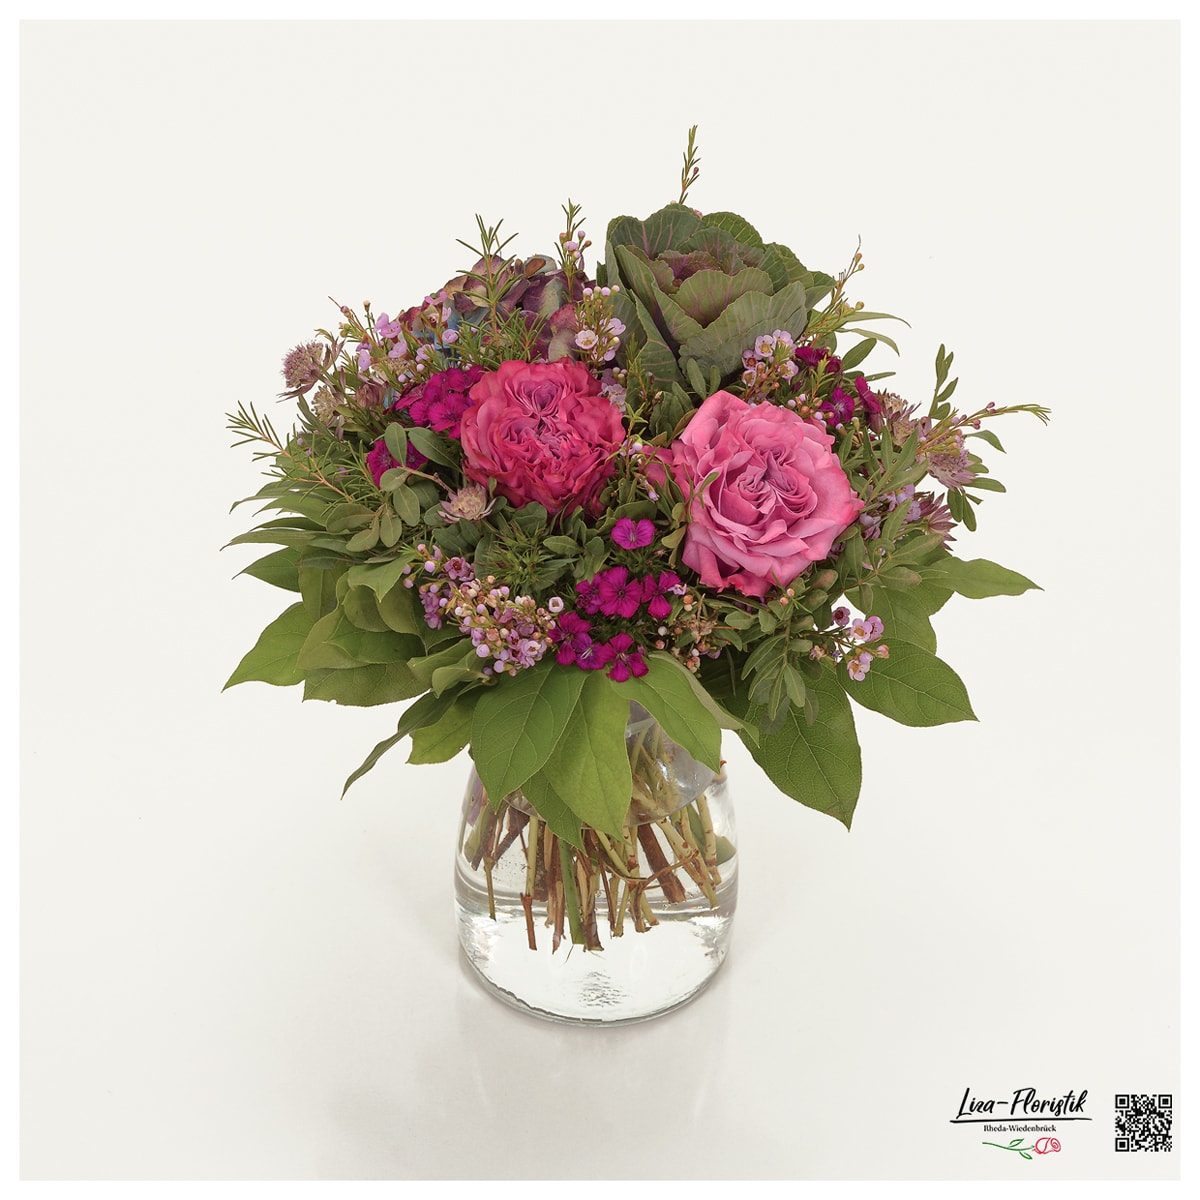 Blumenstrauß mit Rosen, Zierkohl, Wachsblumen, Hortensien, Astrantie und Bartnelken